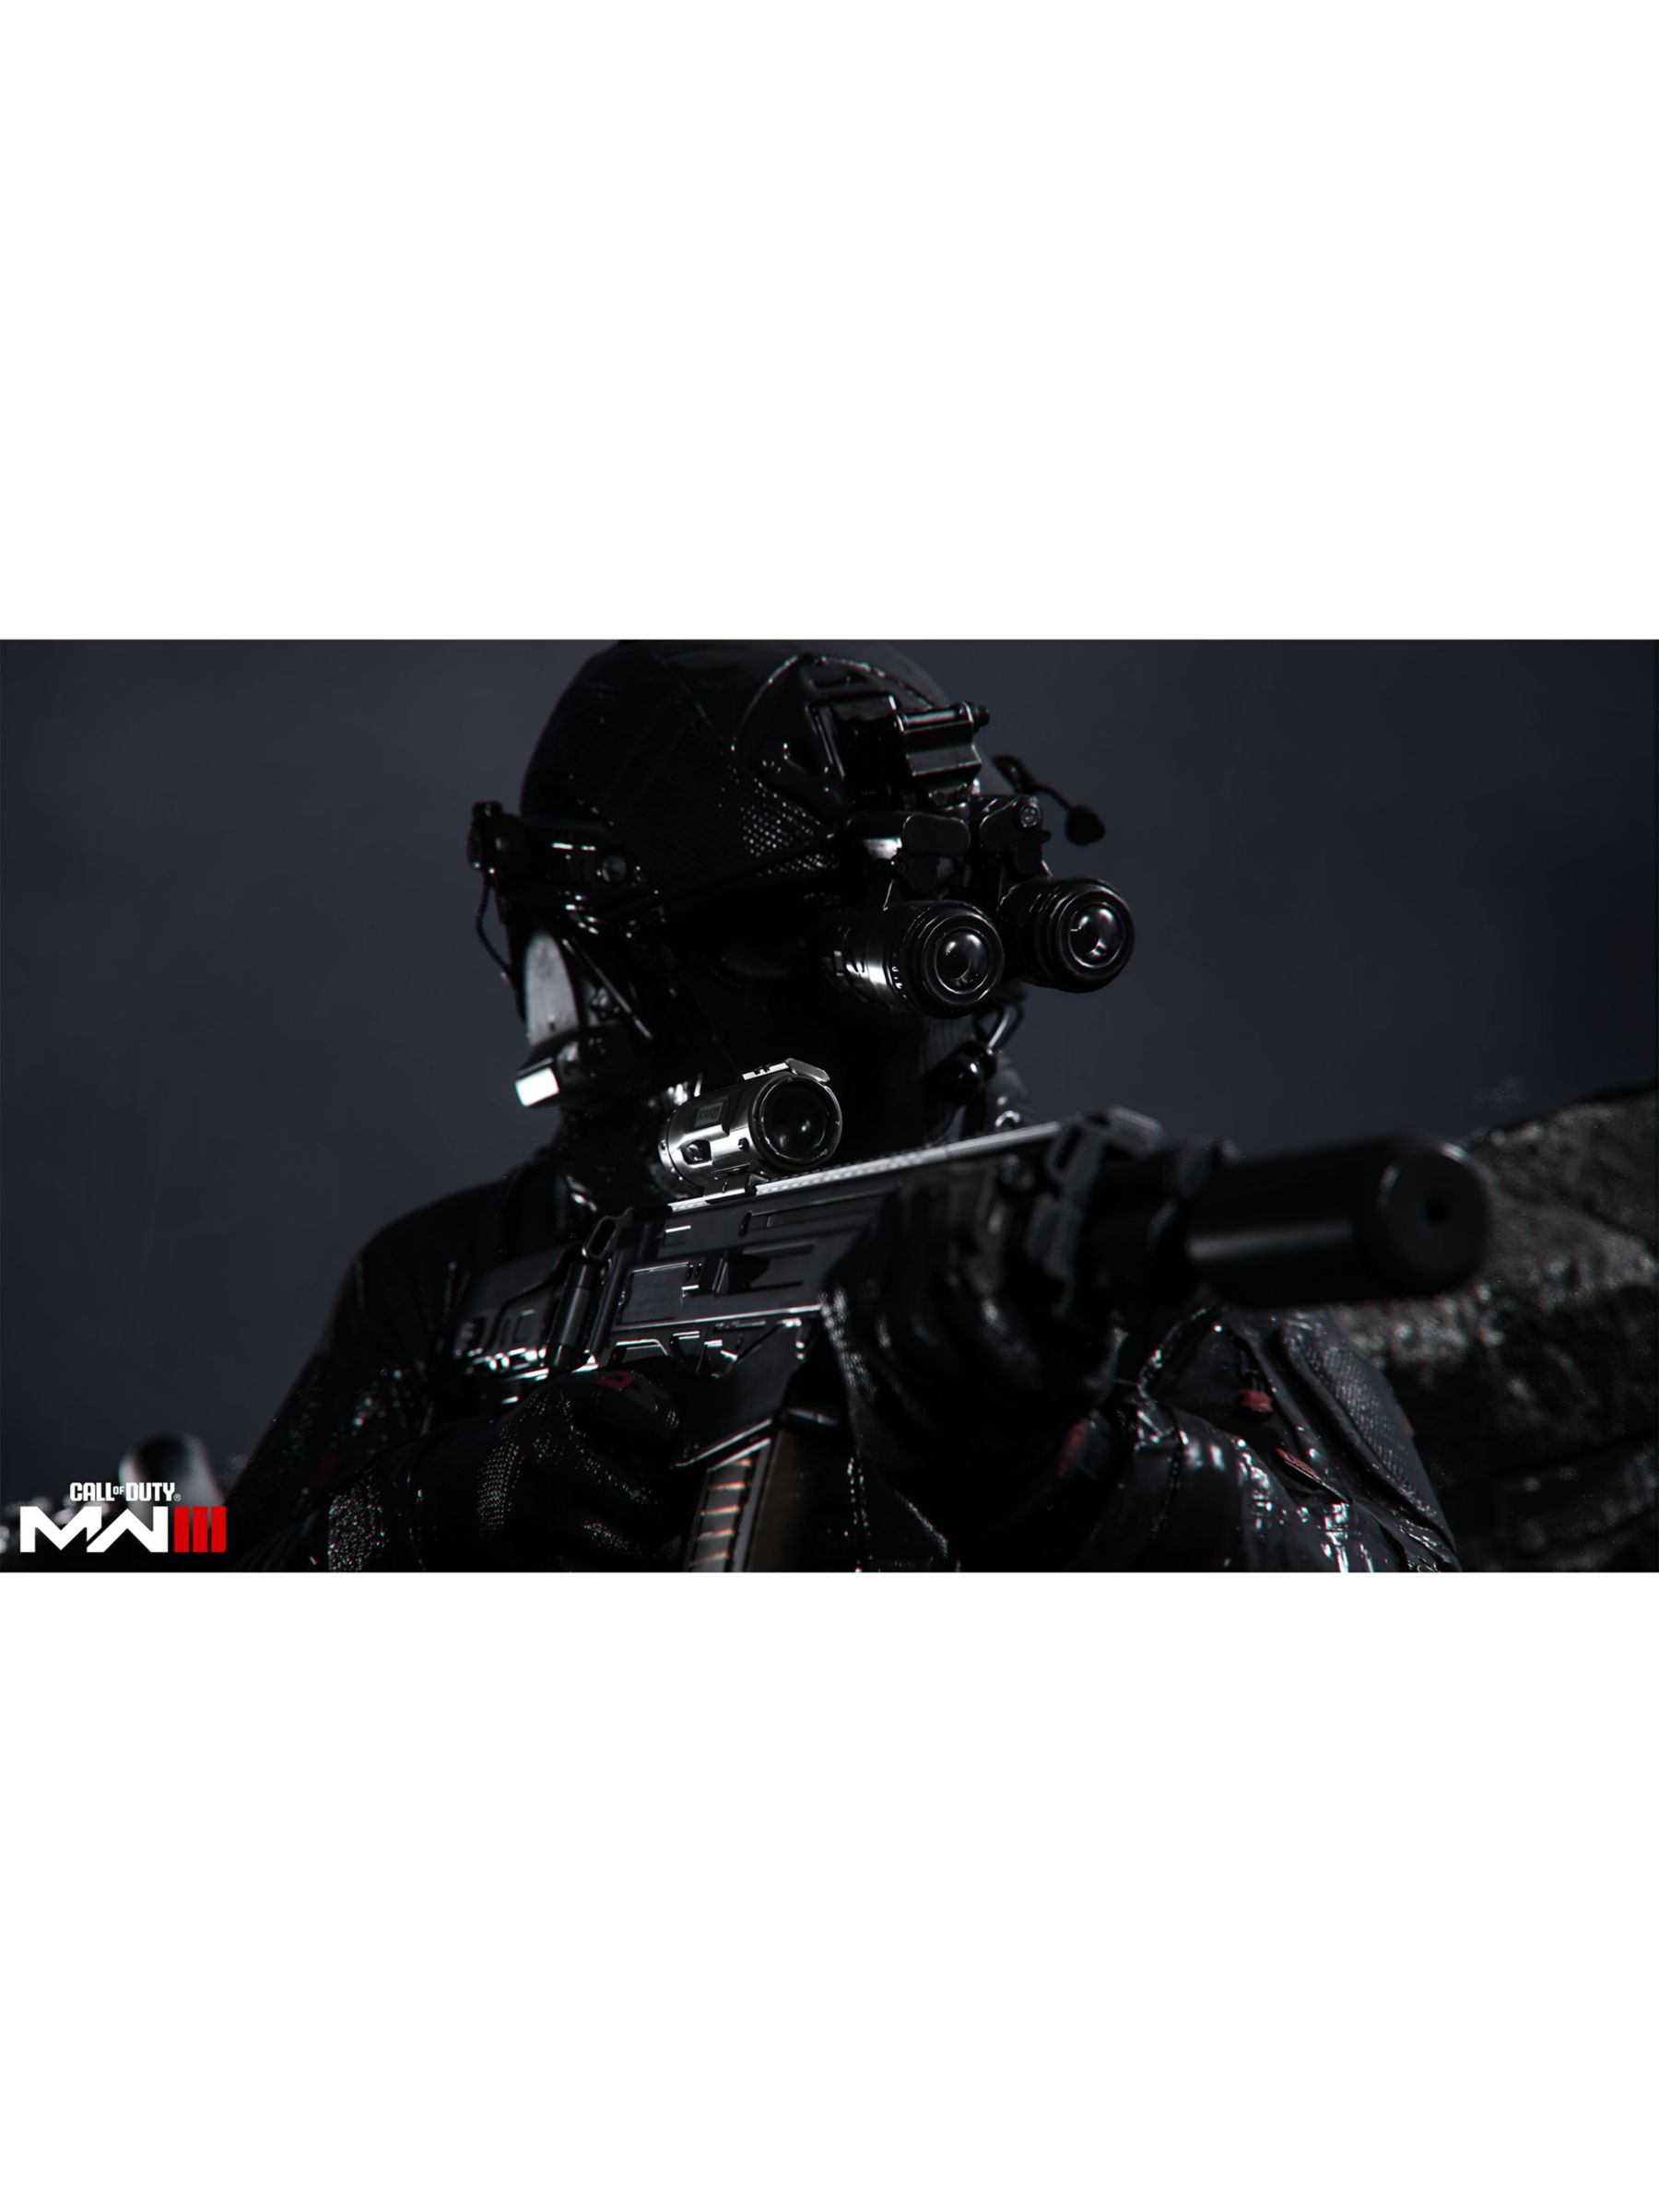 Call Of Duty Modern Warfare III Collector's Edition Playstation